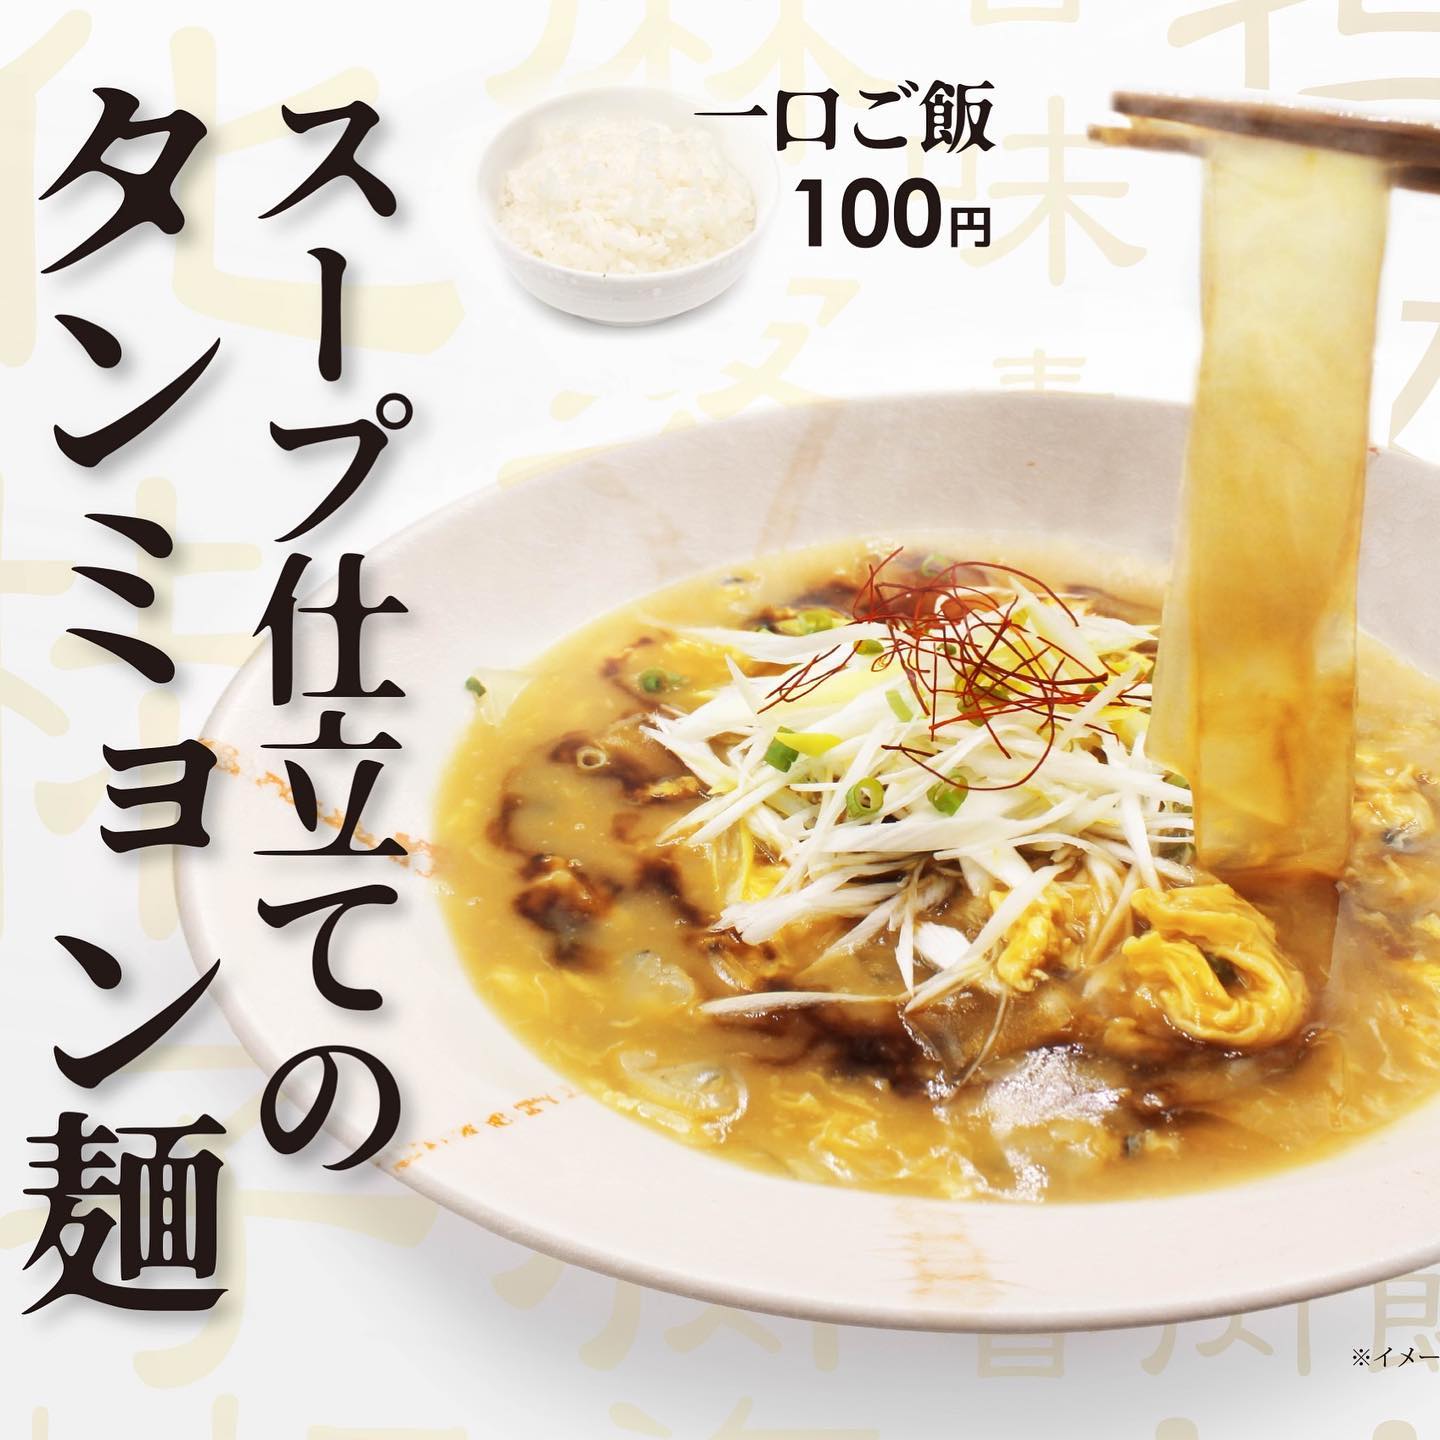 話題のタンミョン麺- from Instagram